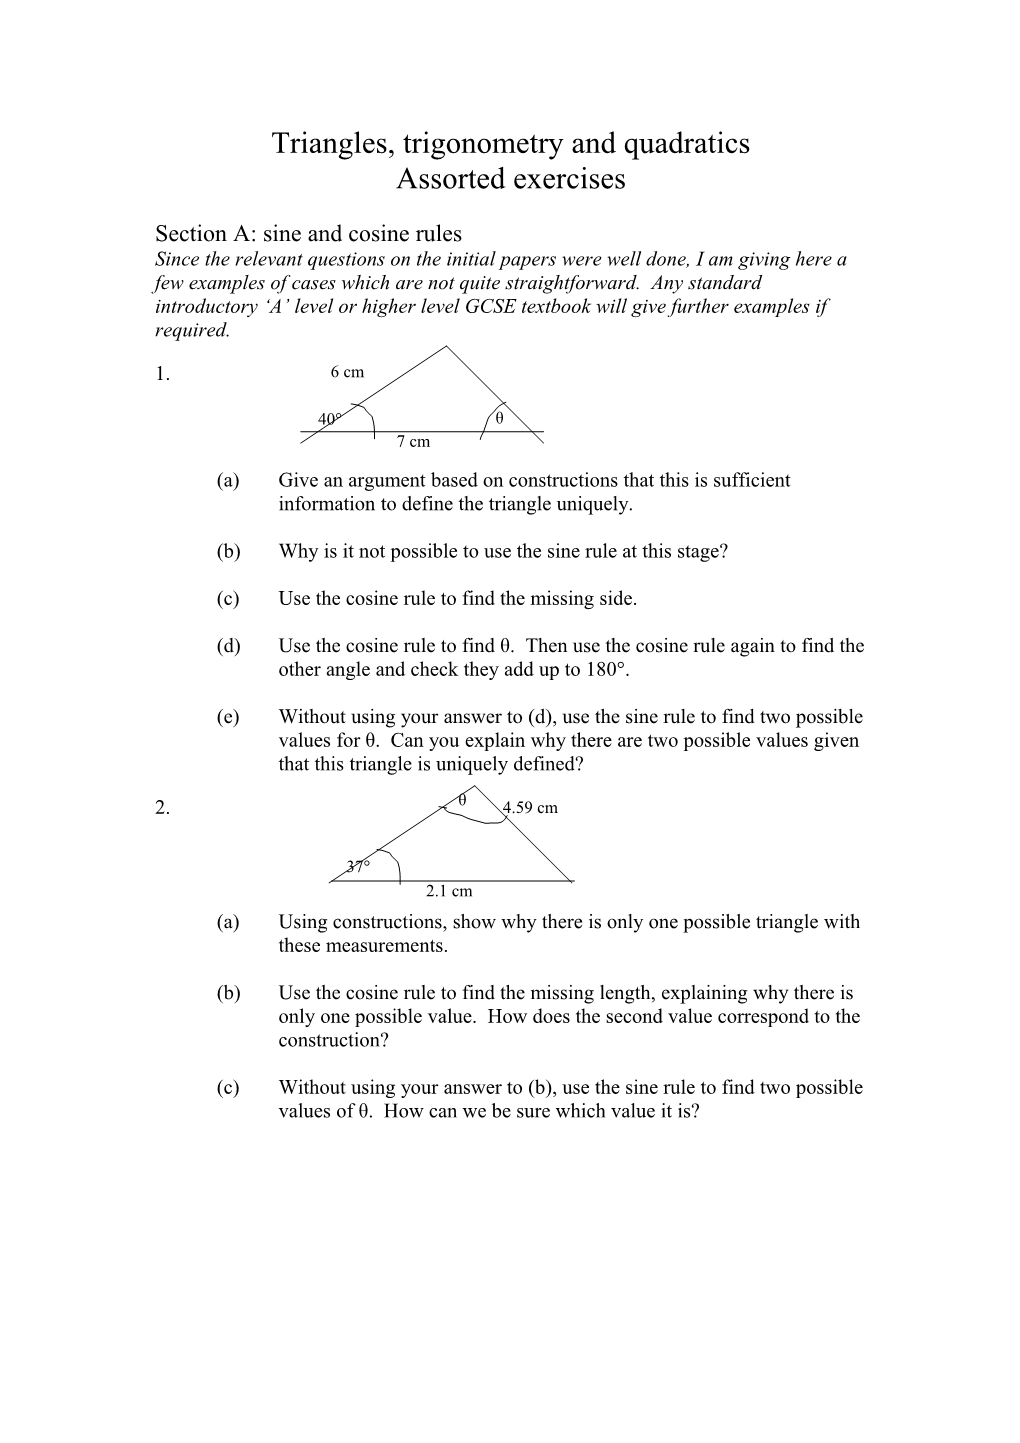 Triangles, Trigonometry and Quadratics